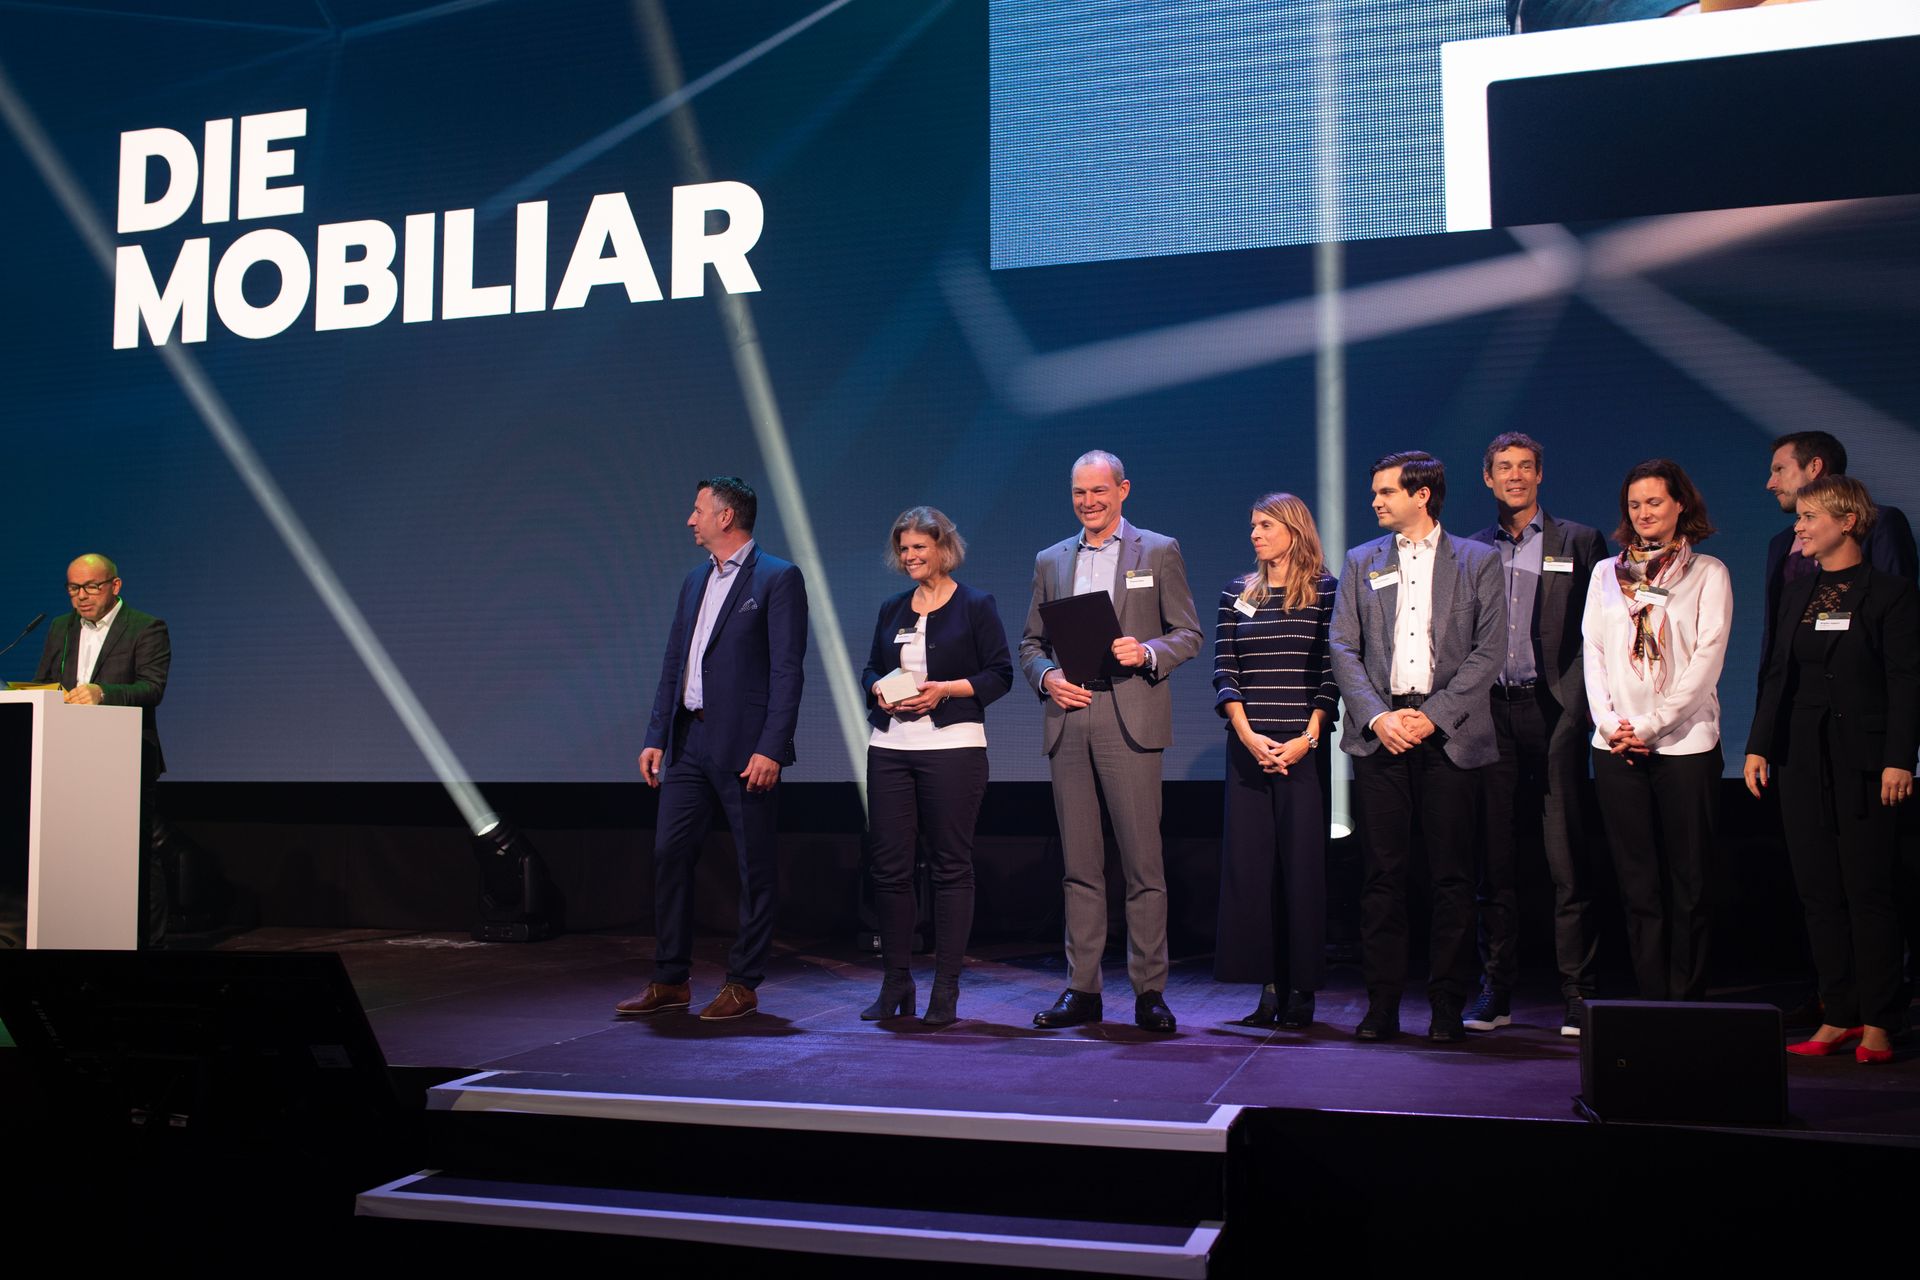 حصلت شركة "La Mobiliare" على جائزة "Digital Excellence PMI" في "جائزة الاقتصاد الرقمي" السويسرية.